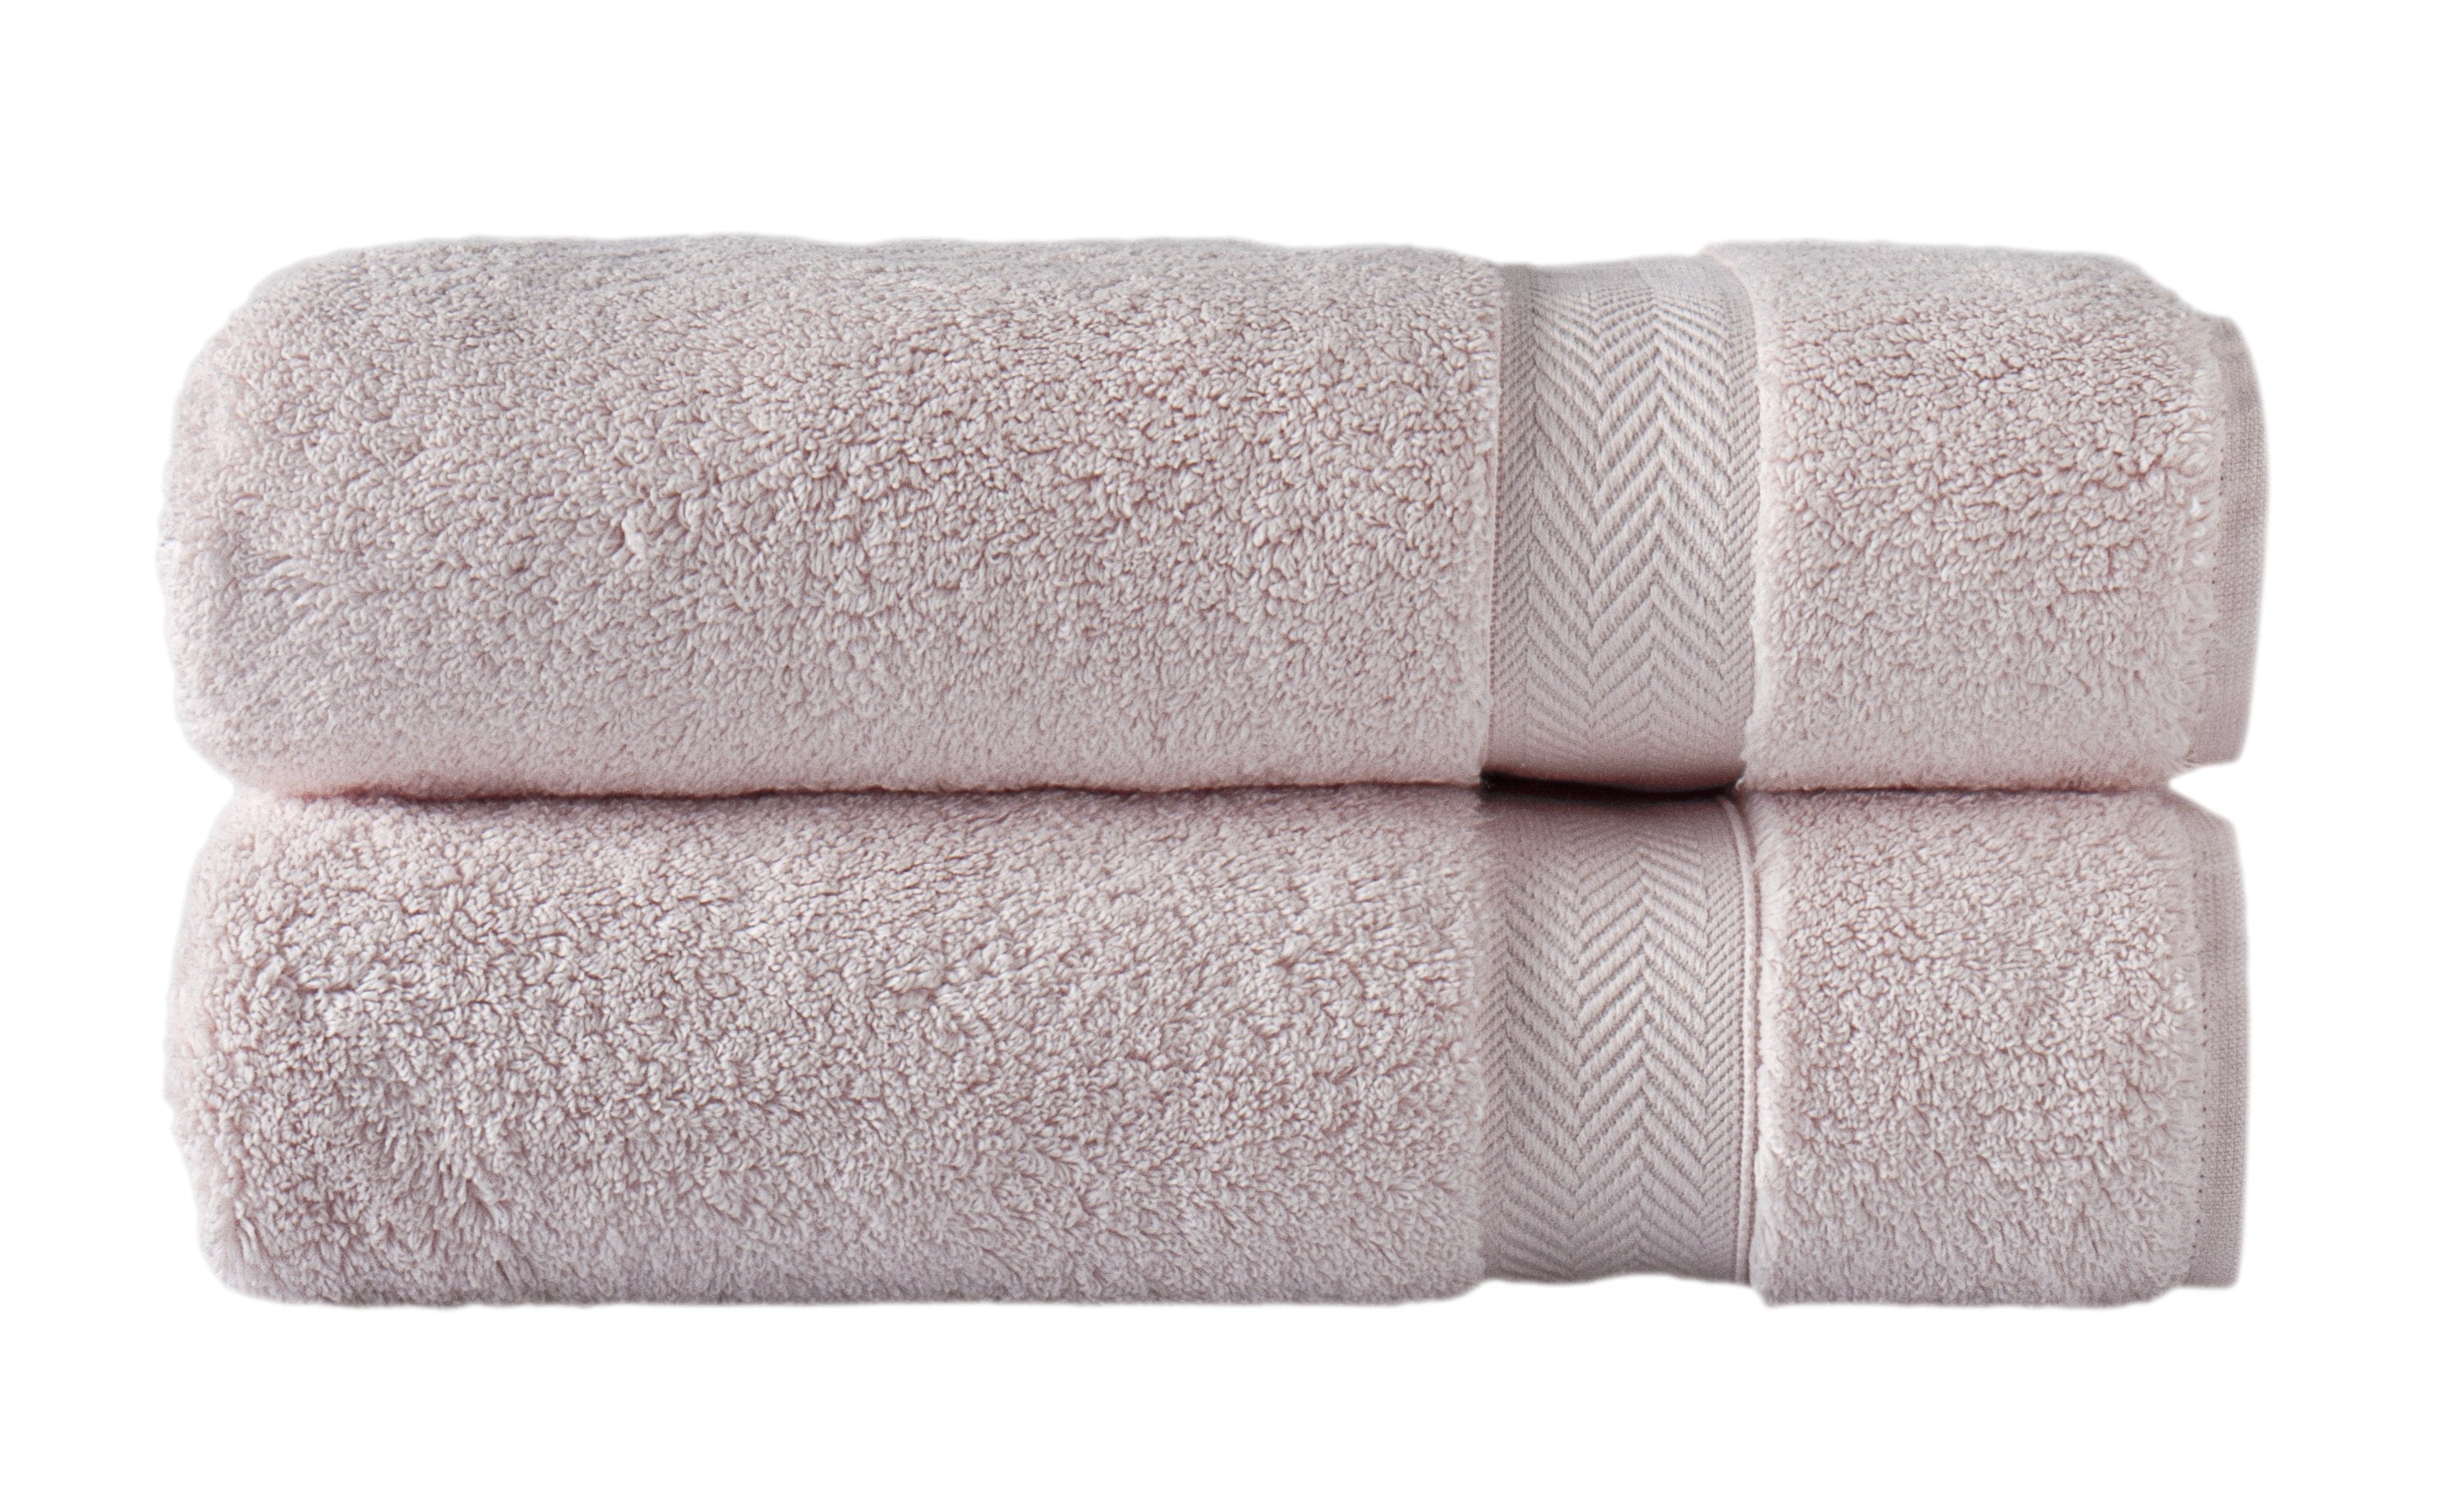 Klassic Collection 2 PK Bath Towels - Candy